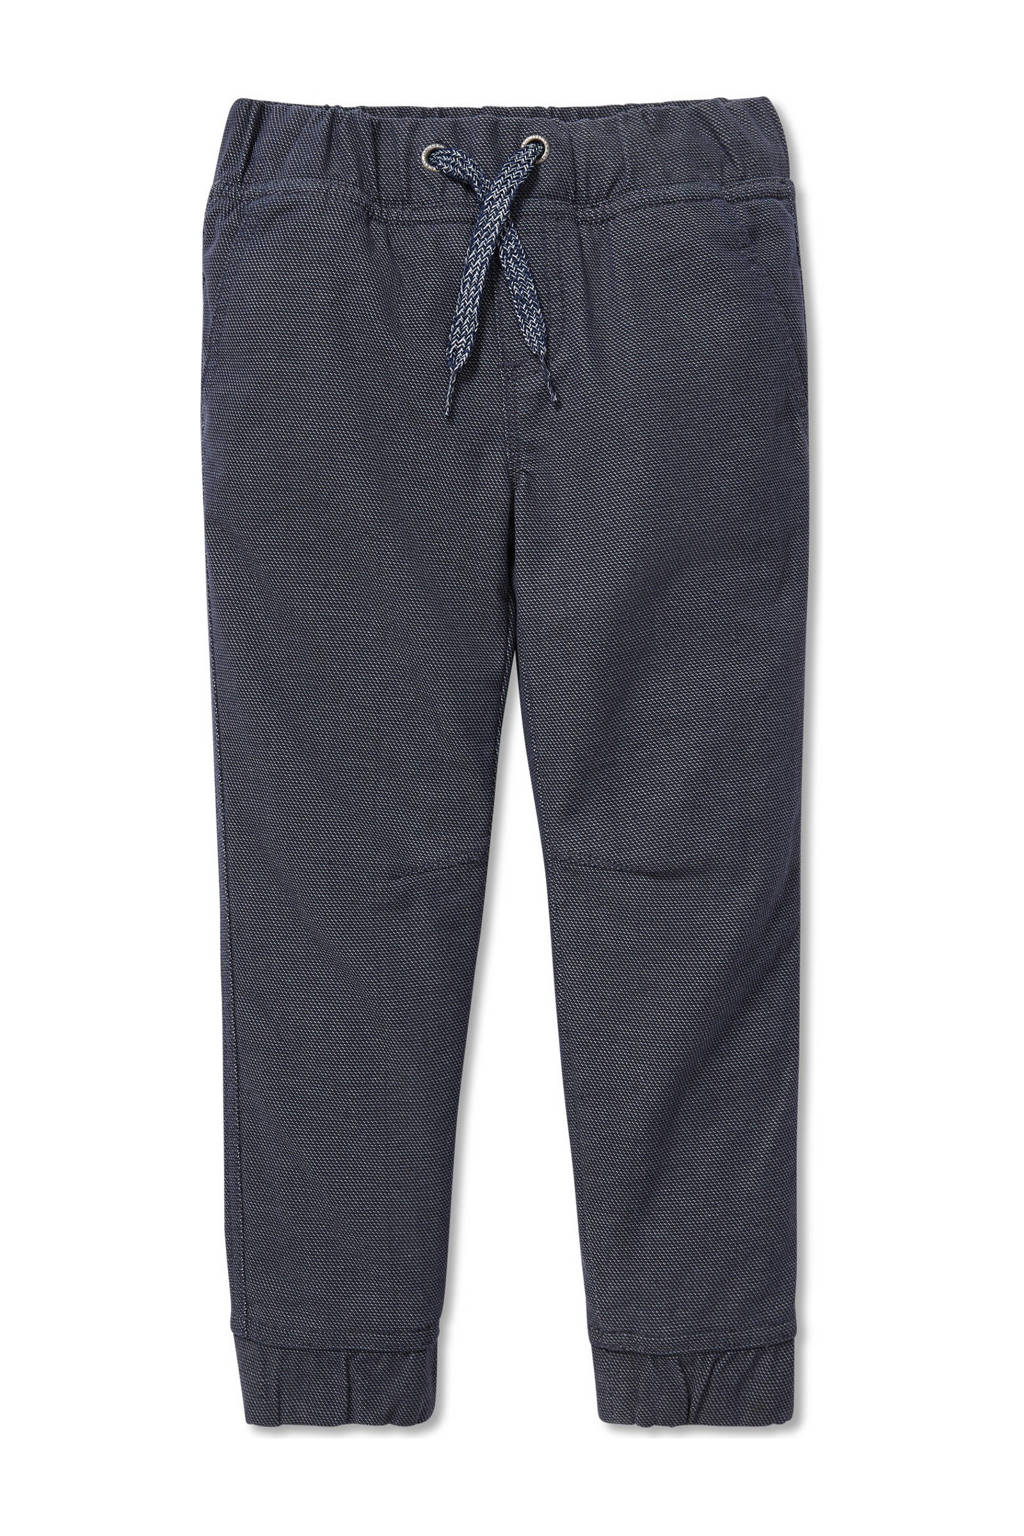 Antraciete jongens C&A regular fit broek van polyester met elastische tailleband met koord